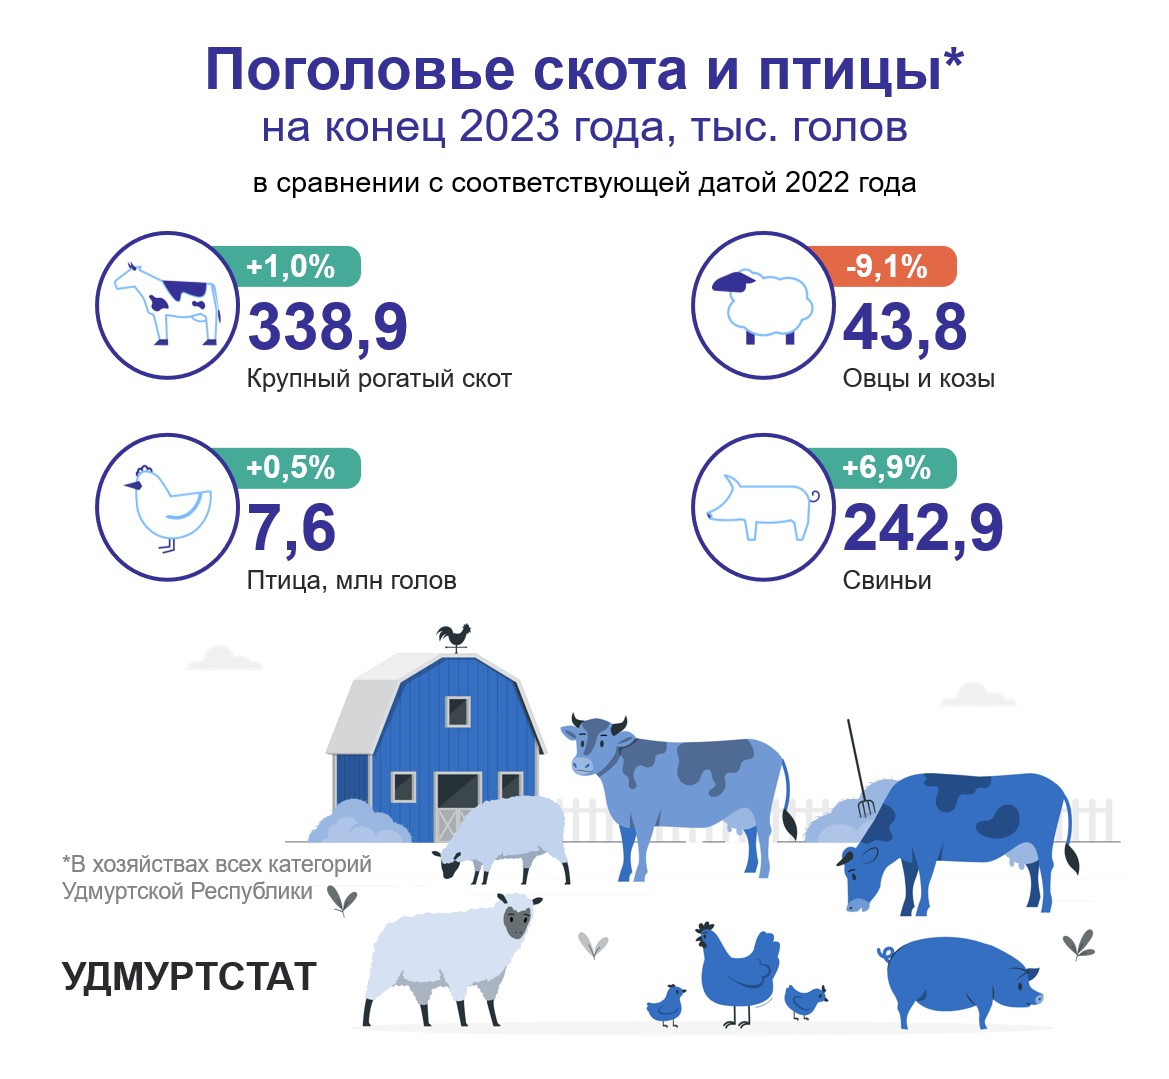 Поголовье скота и птицы на конец 2023 года.